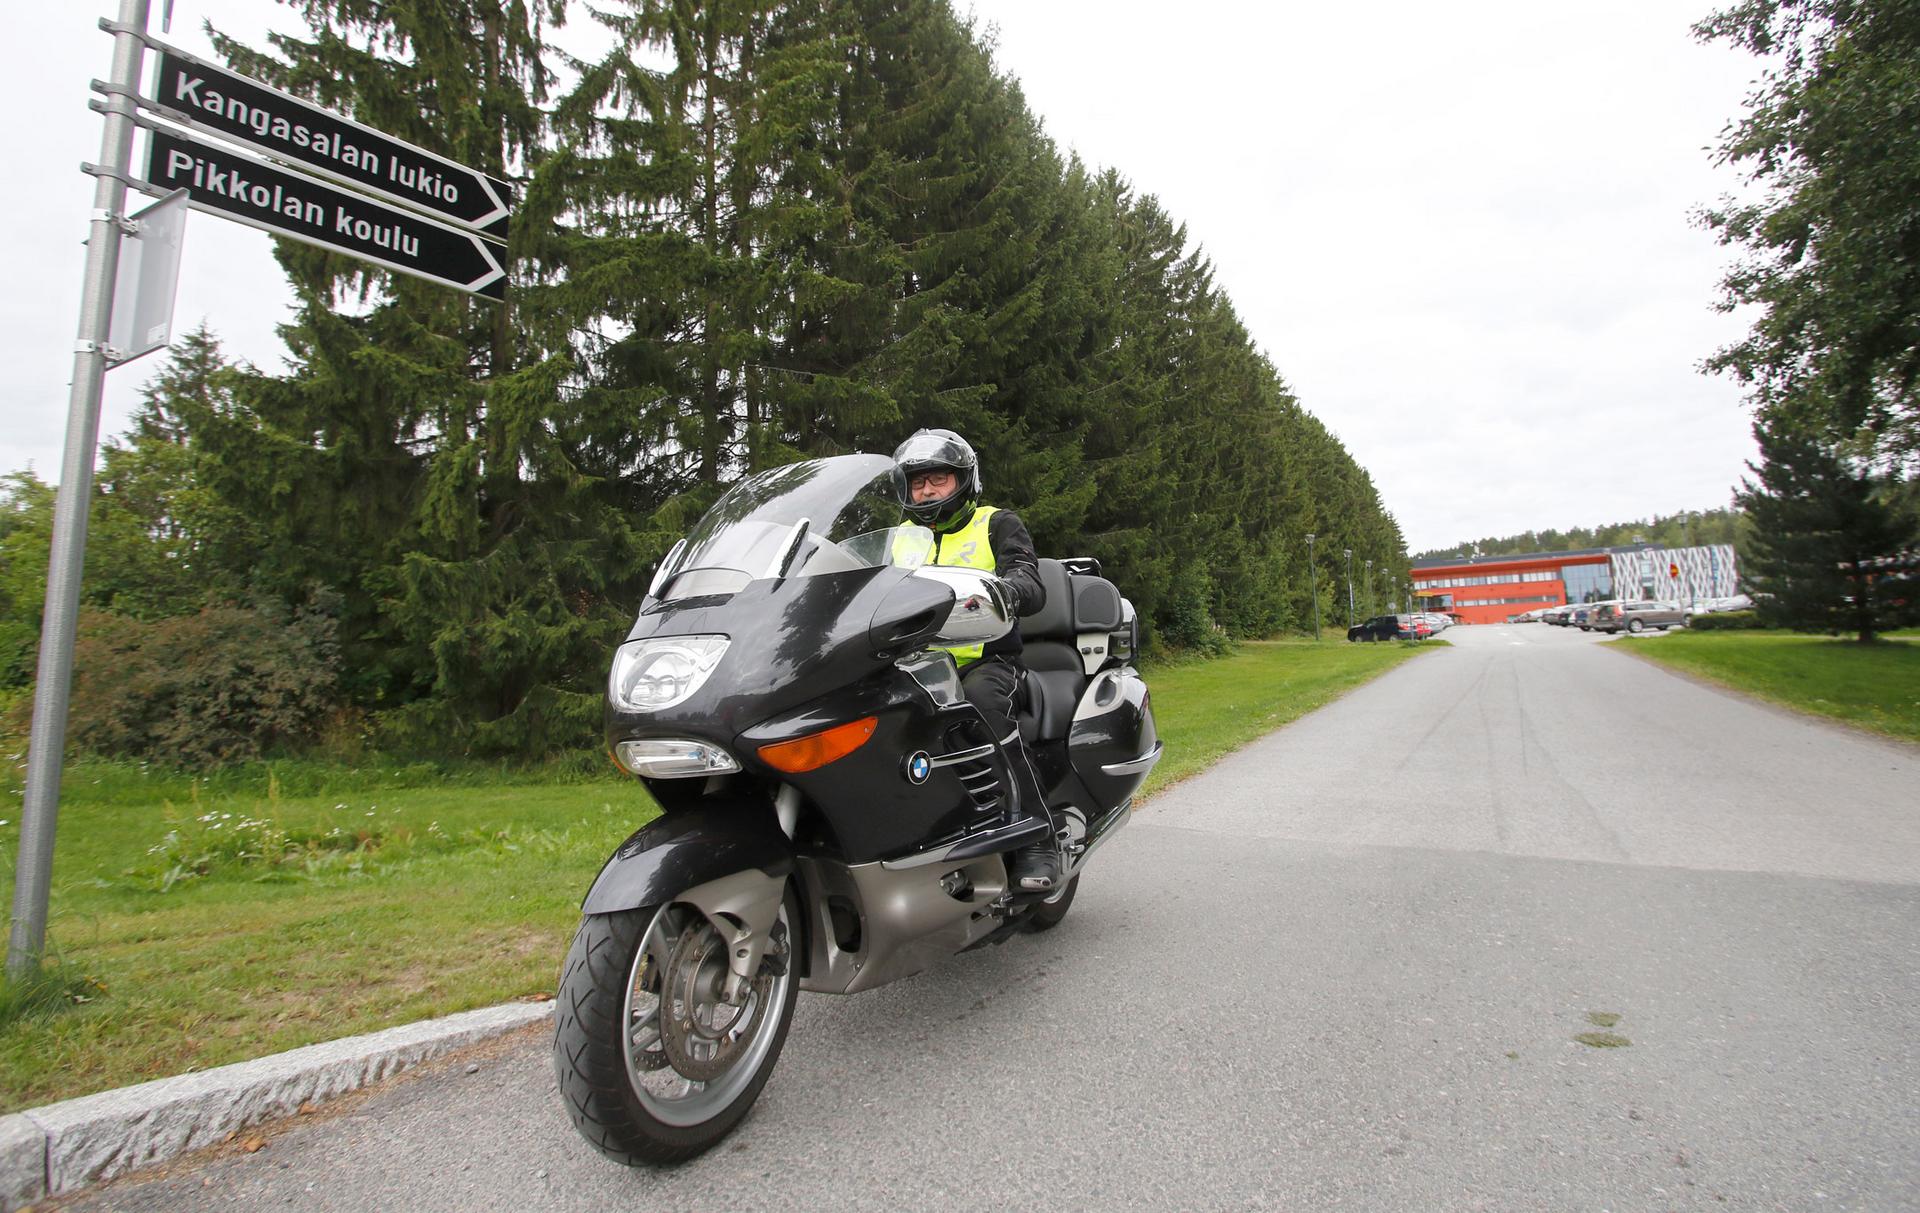 Haastattelupäivänä Teuvo Ropo suuntasi ystävänsä kanssa moottoripyöräreissulle jonnekin päin Suomea. Pitkät ajomatkat taittuvat mukavasti 1200-kuutioisen BMW:n satulassa.